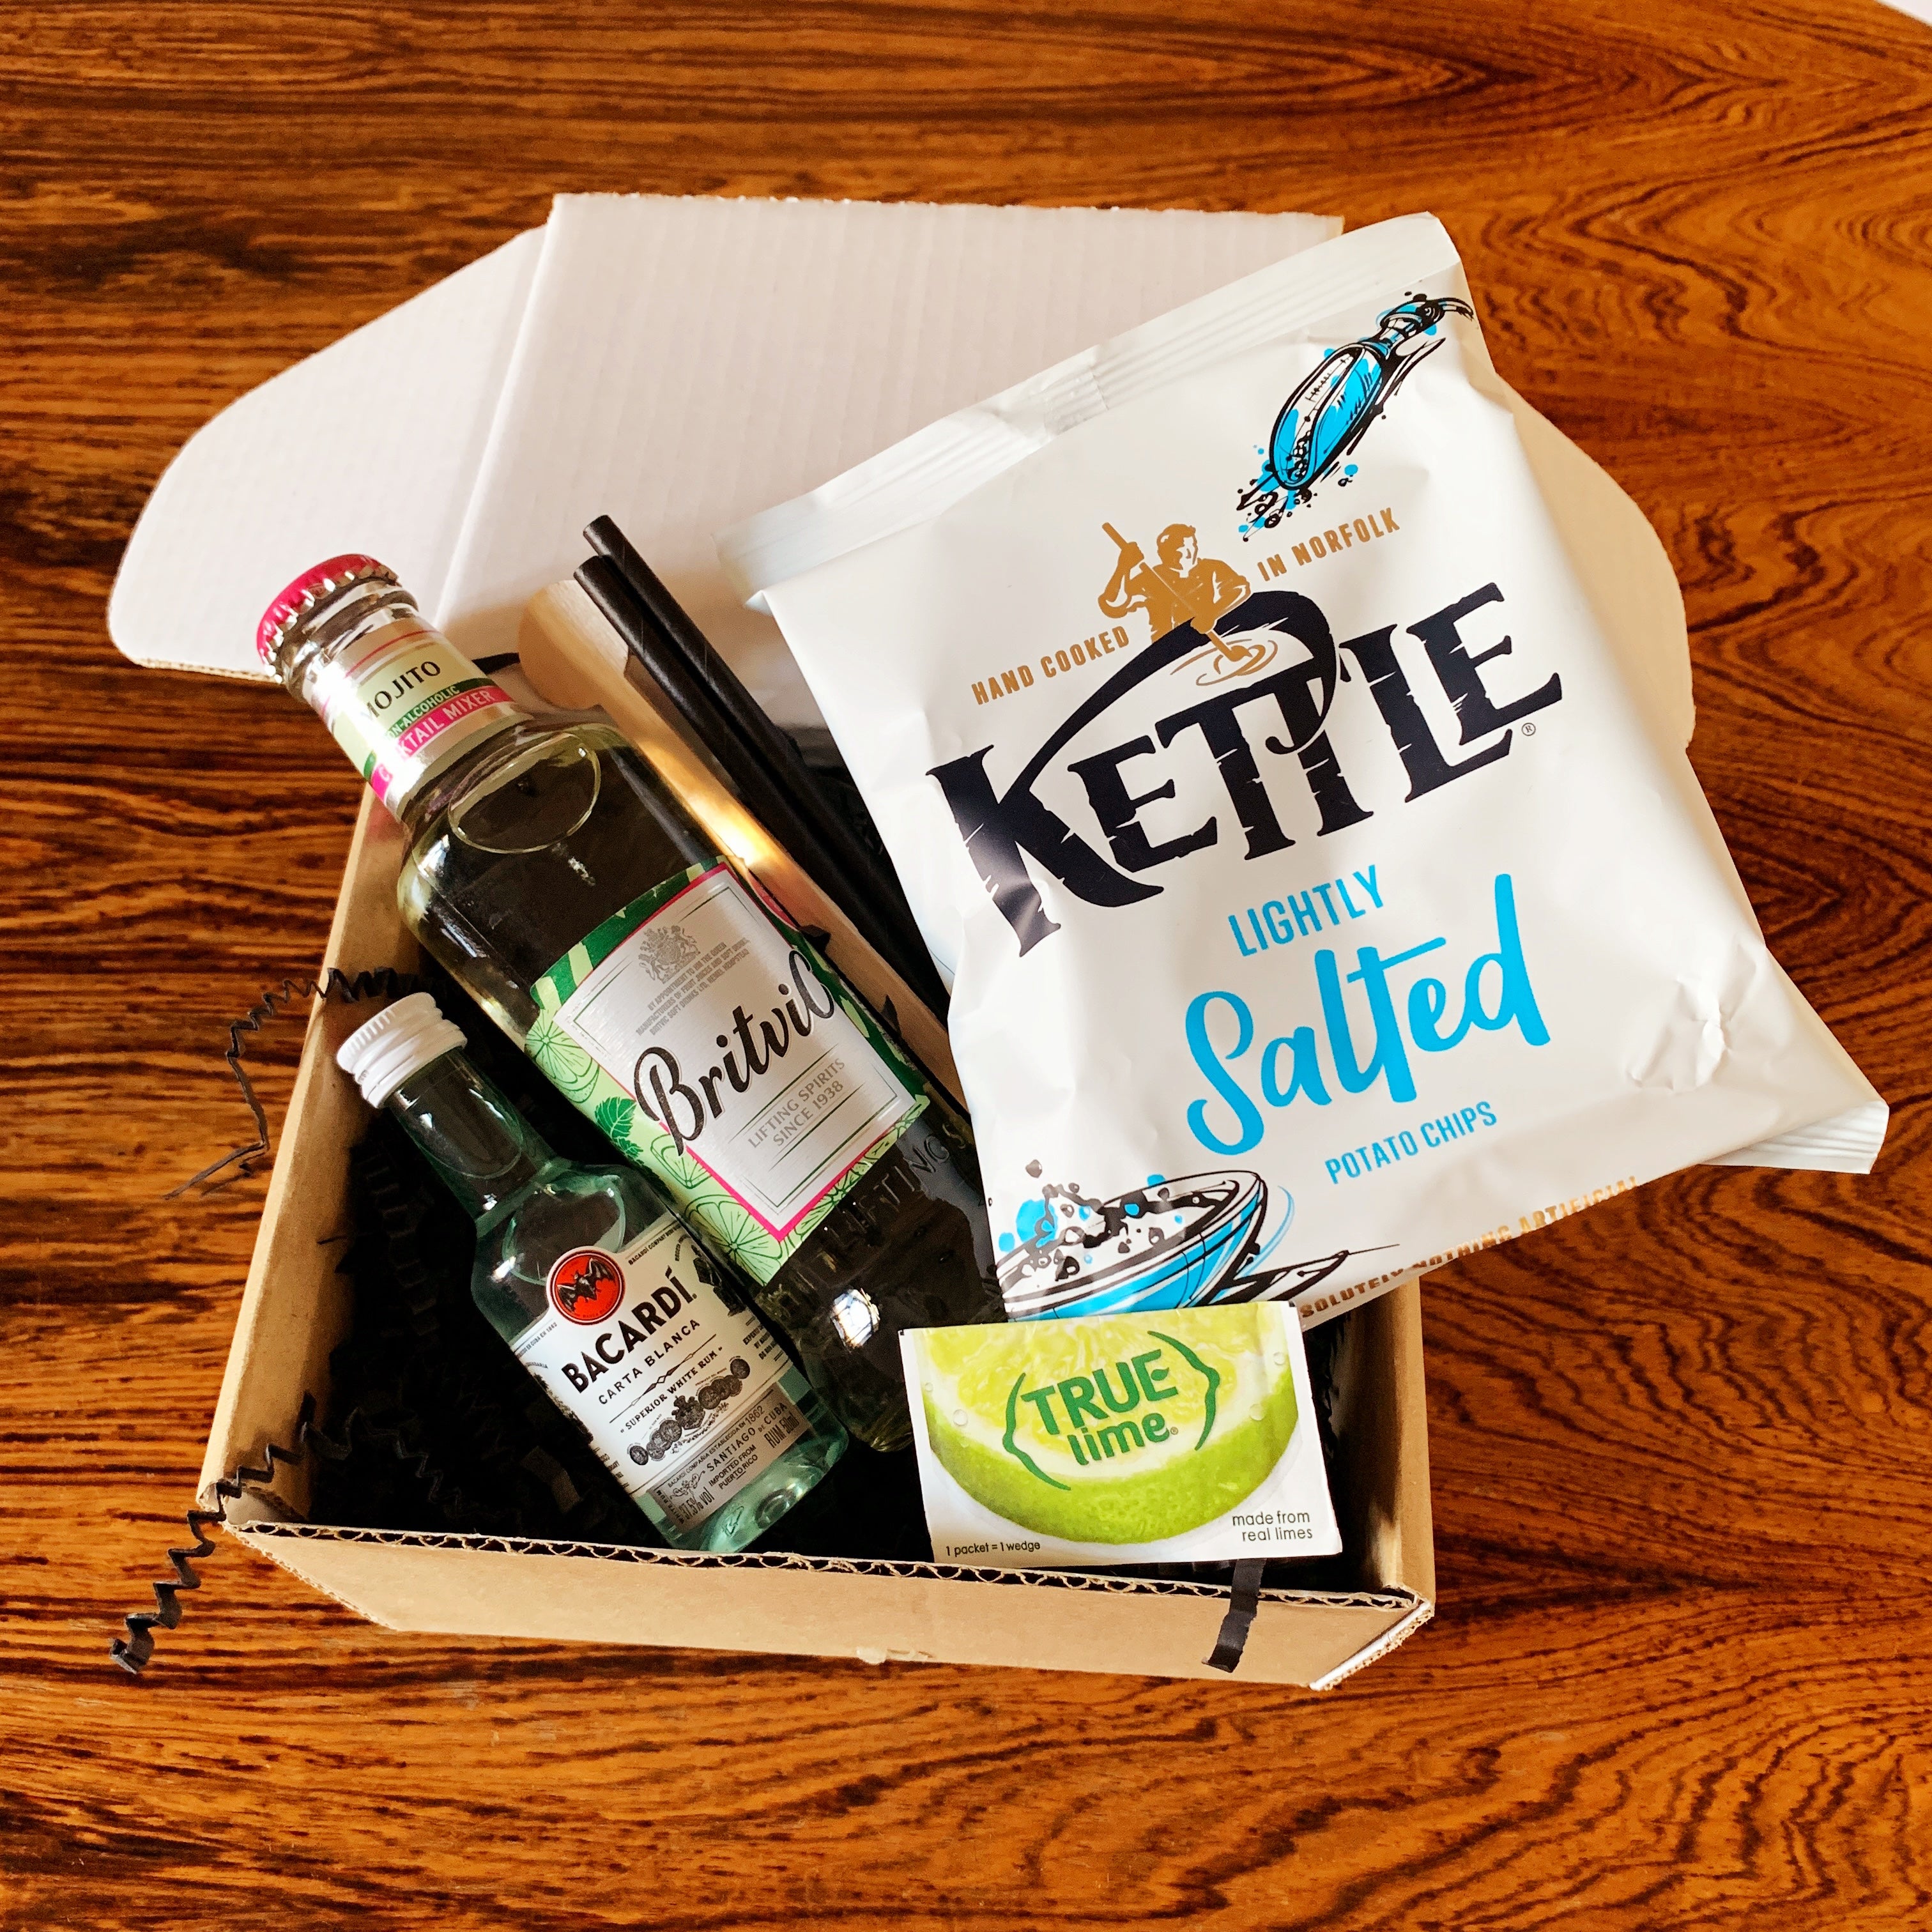 Mojito Cocktail Kit & Crisps Box